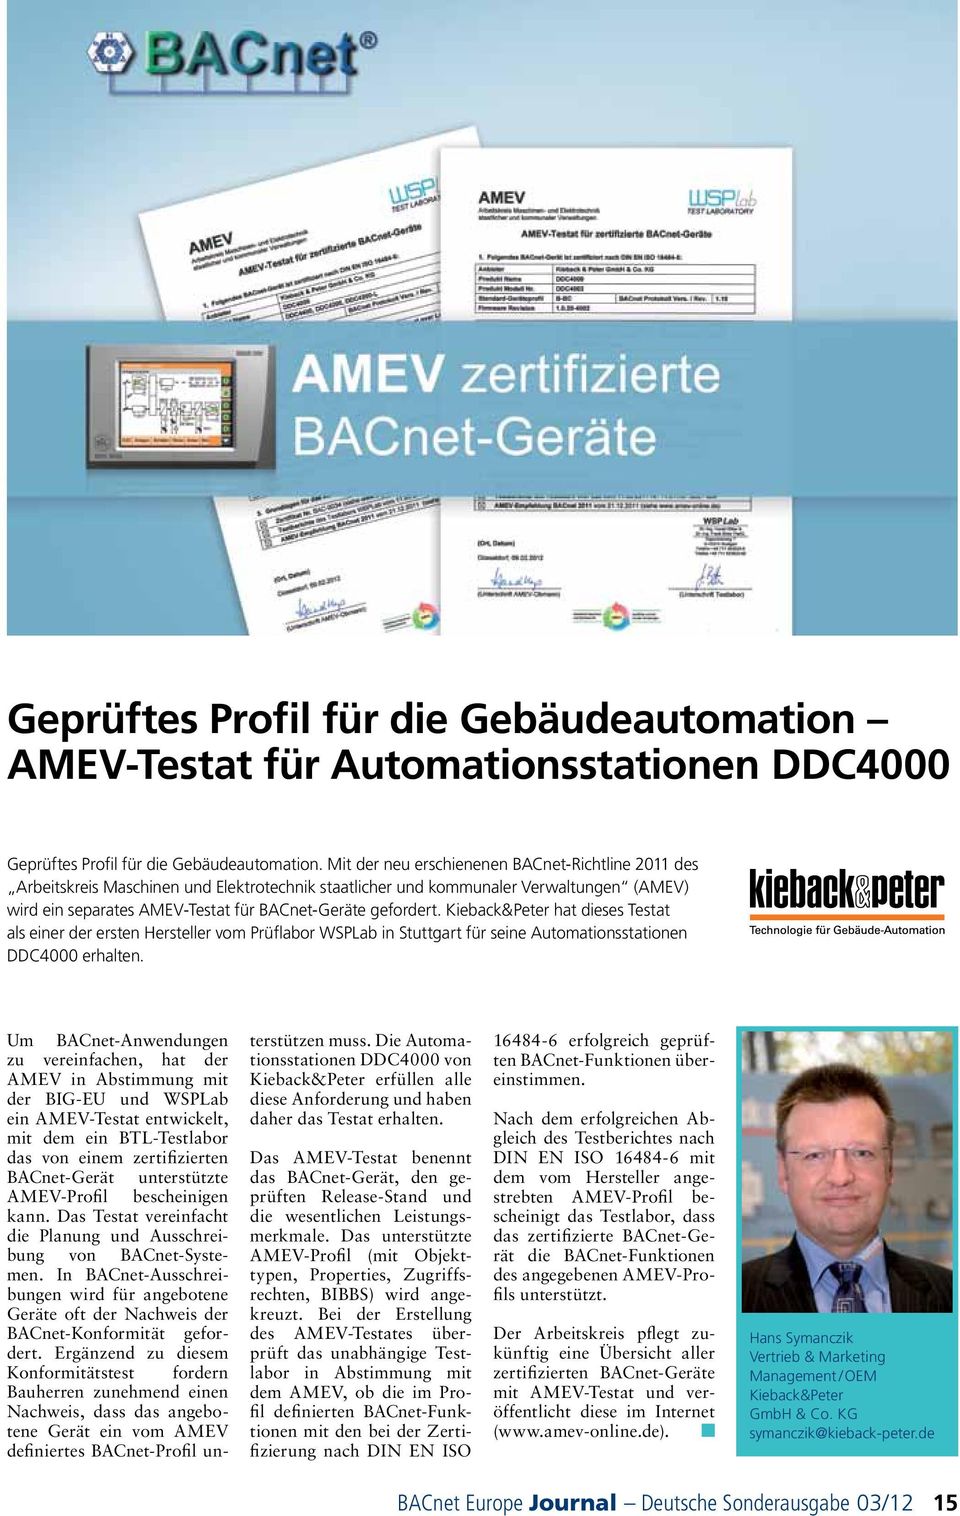 Kieback&Peter hat dieses Testat als einer der ersten Hersteller vom Prüflabor WSPLab in Stuttgart für seine Automationsstationen DDC4000 erhalten.